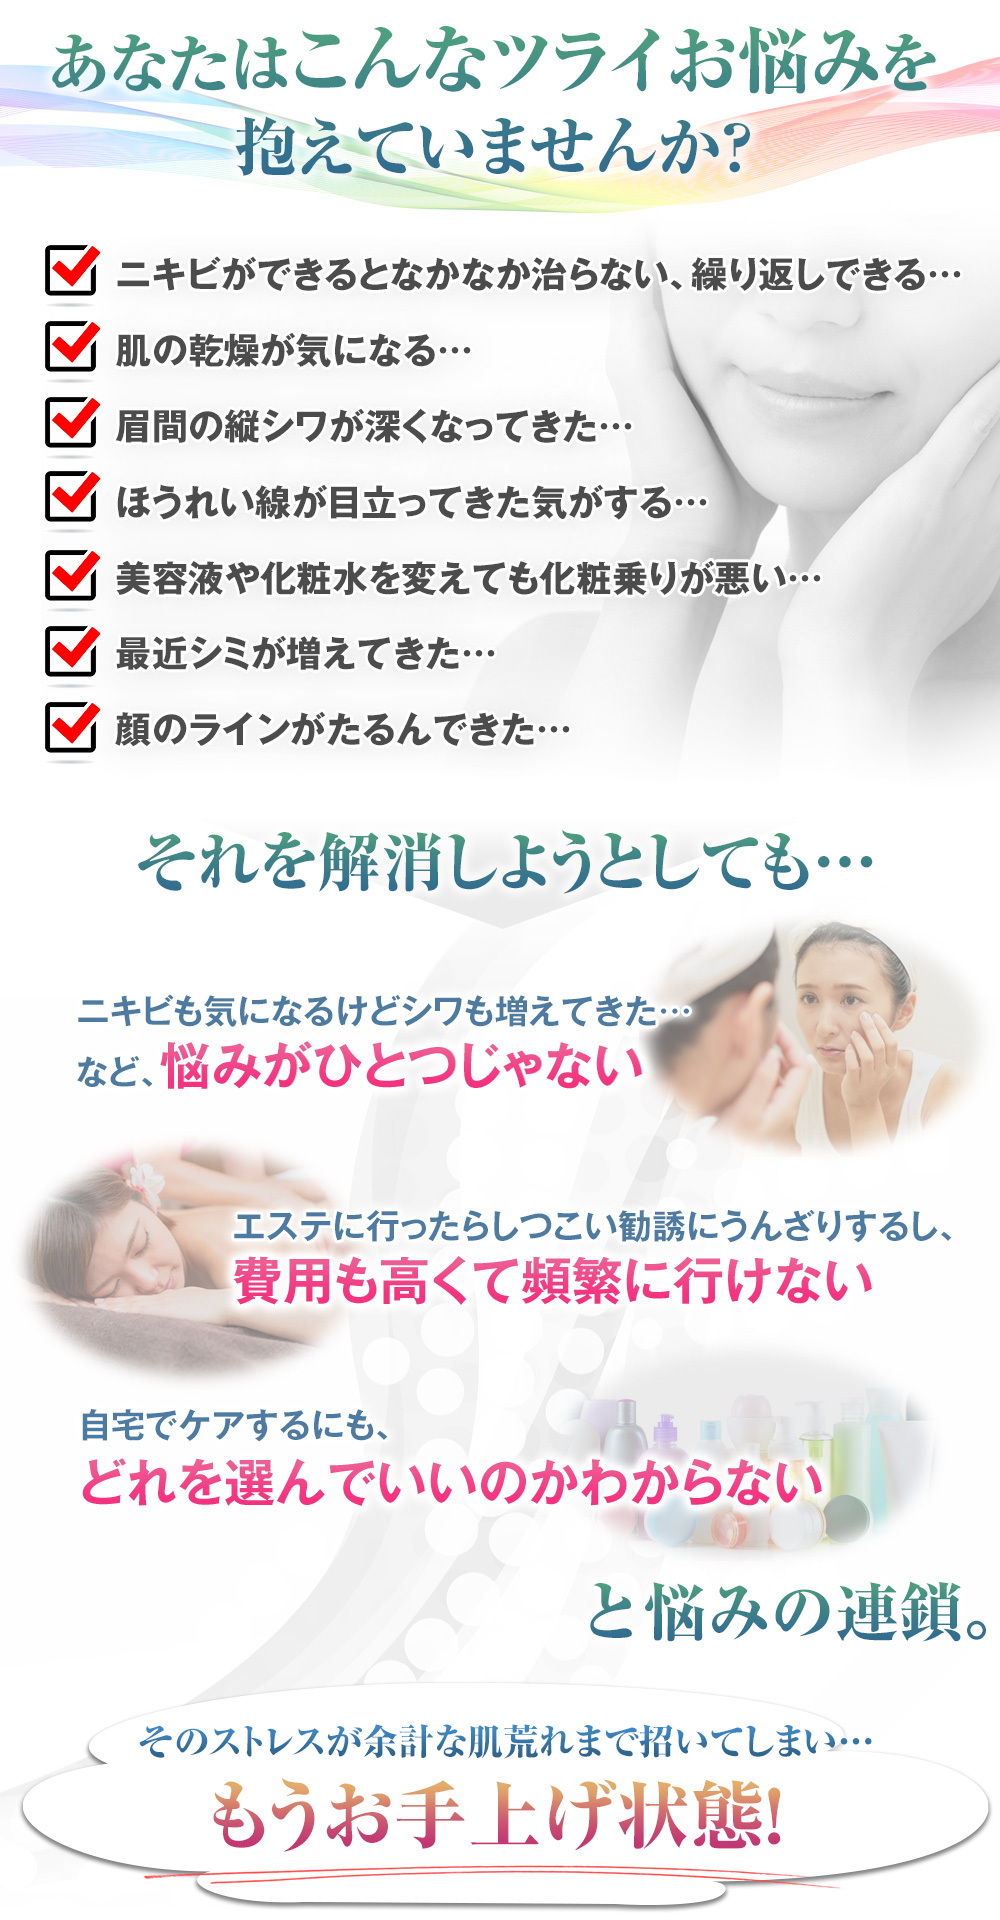 アンチエイジング・ニキビ対策に効果的なLED美顔器Aduro公式サイト